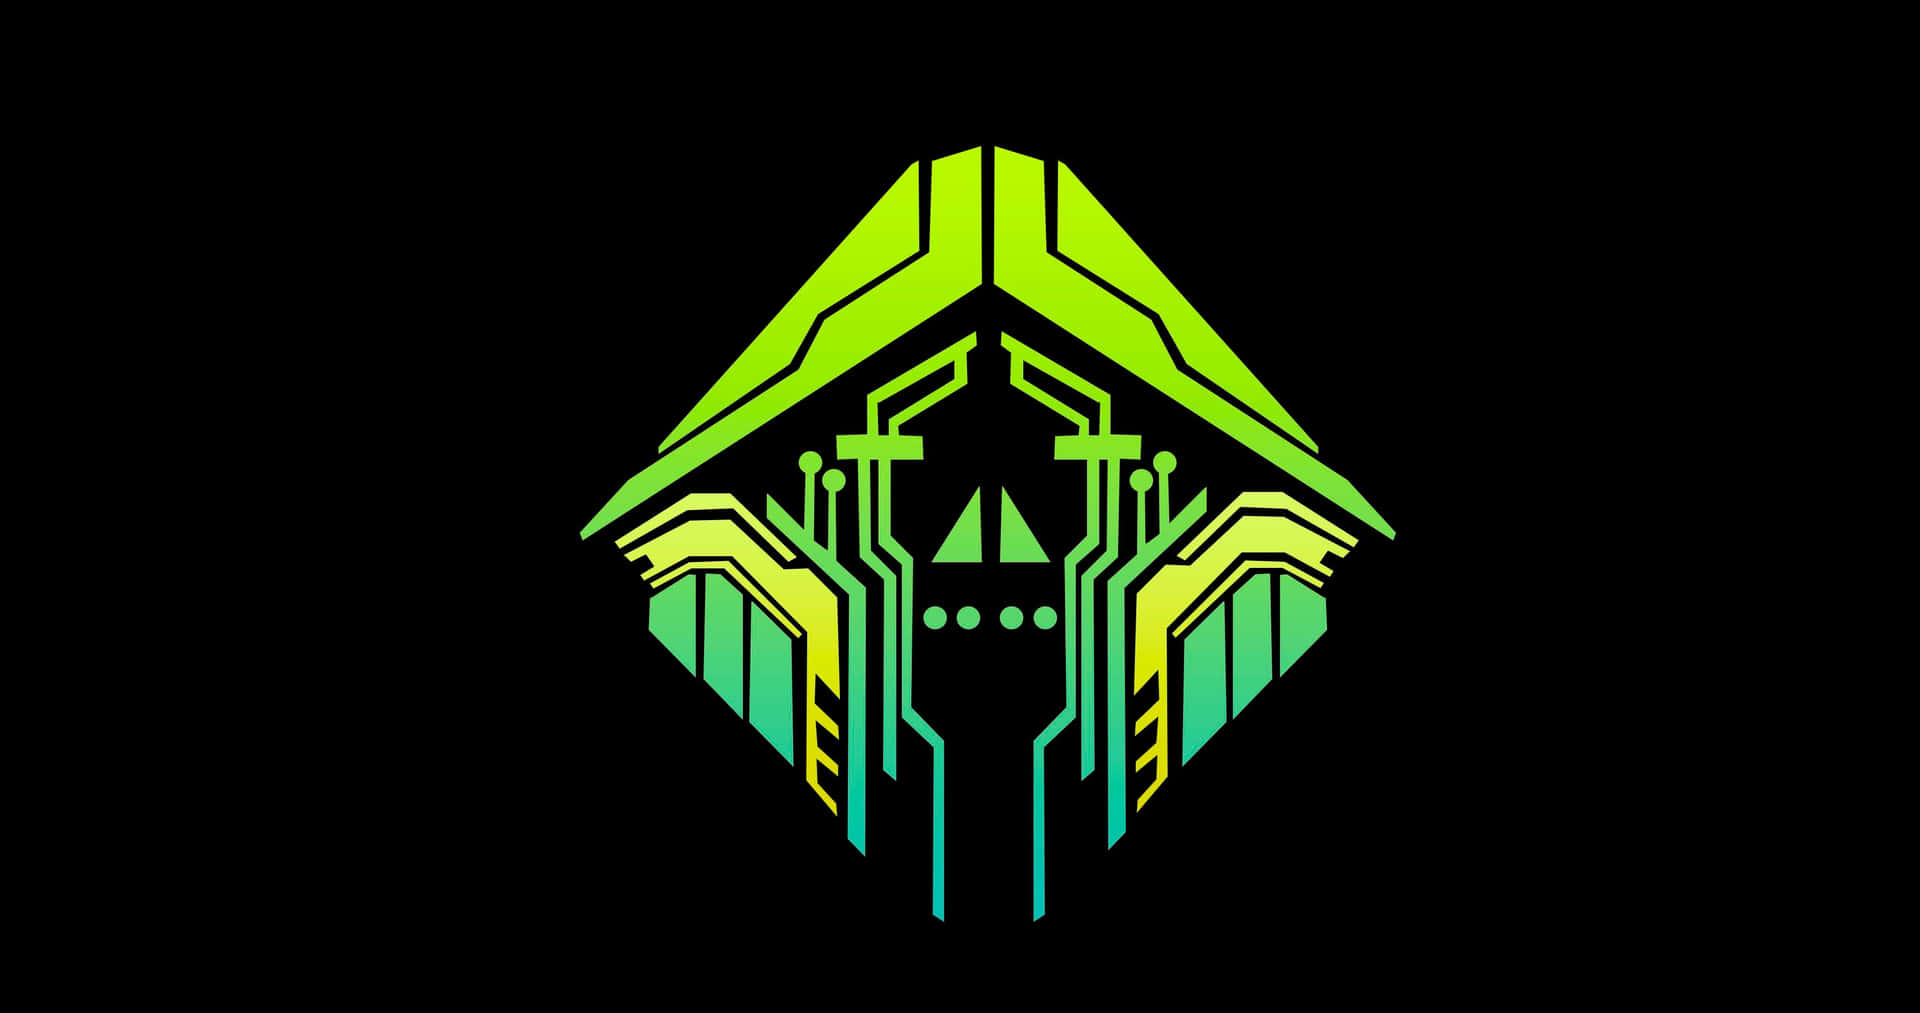 Engrøn Og Neon Dødningehoved-logo På En Sort Baggrund